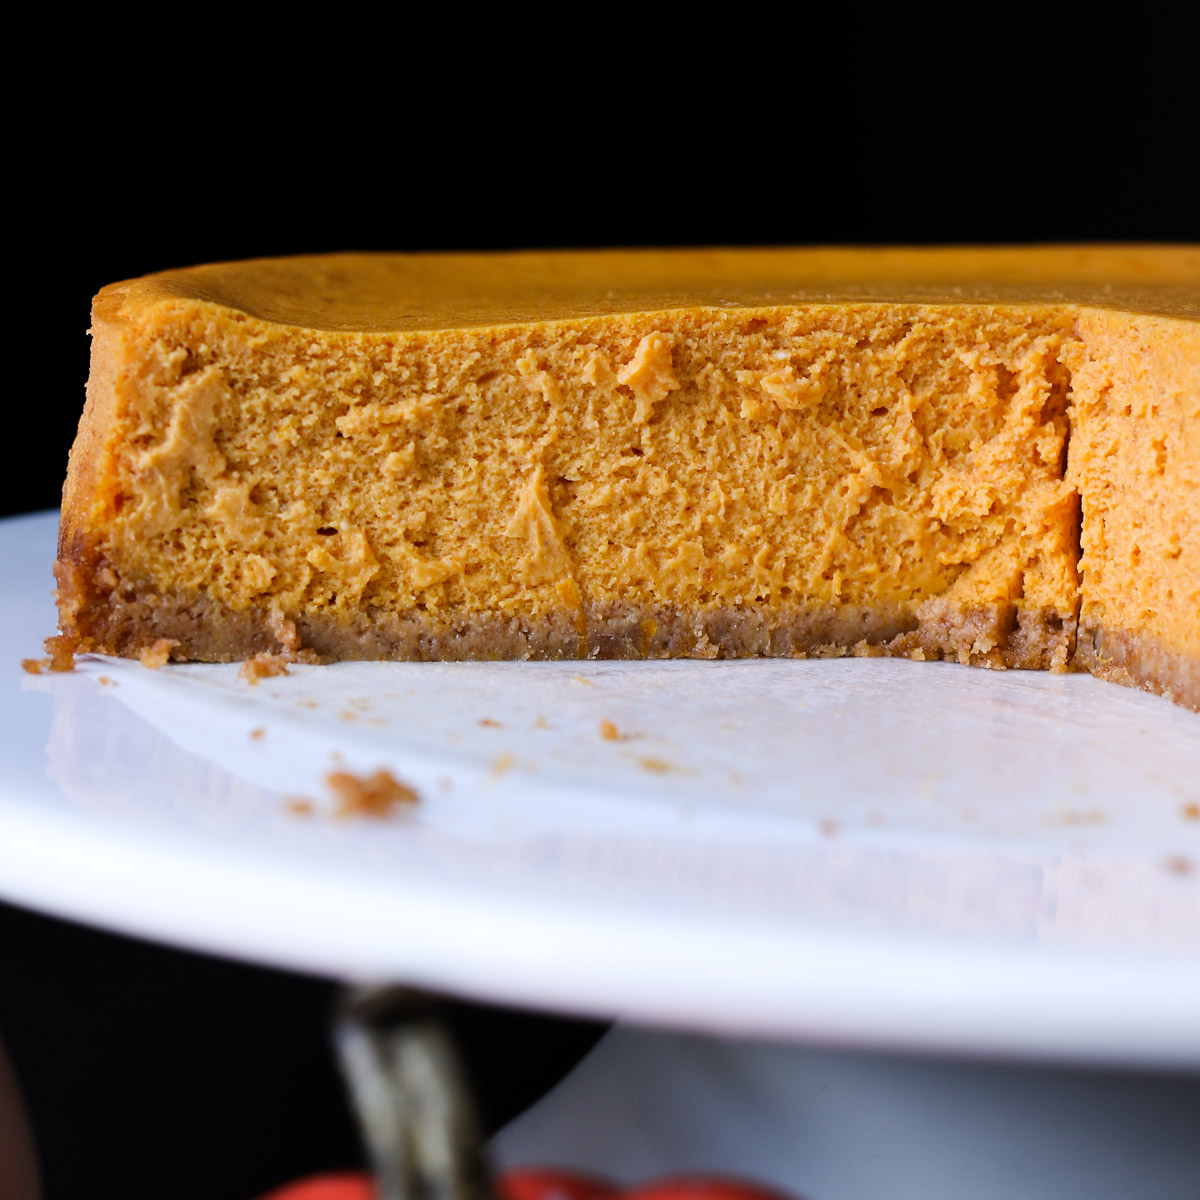 https://goodcheapeats.com/wp-content/uploads/2013/11/cut-side-pumpkin-cheesecake.jpg